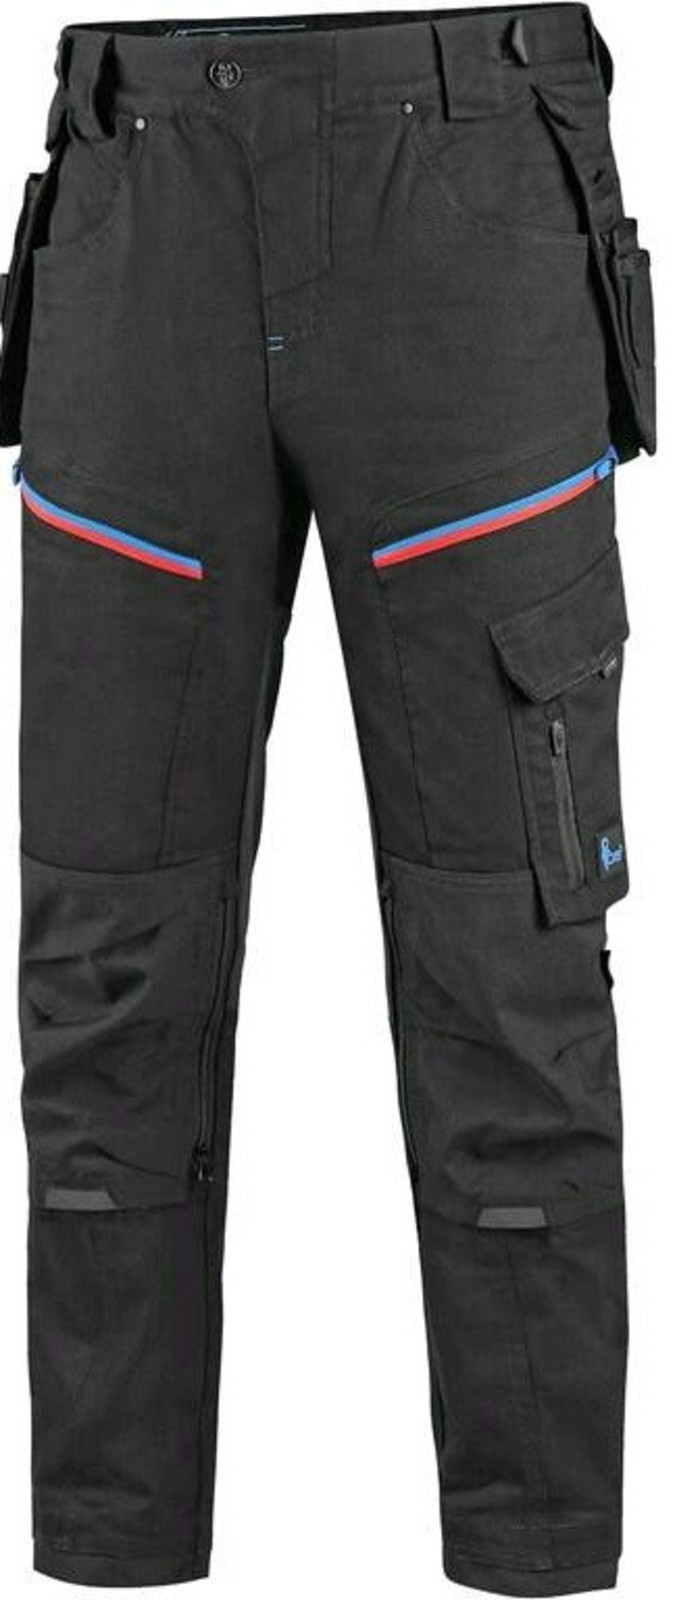 Pánske pracovné nohavice CXS Leonis - veľkosť: 60, farba: čierna/modrá